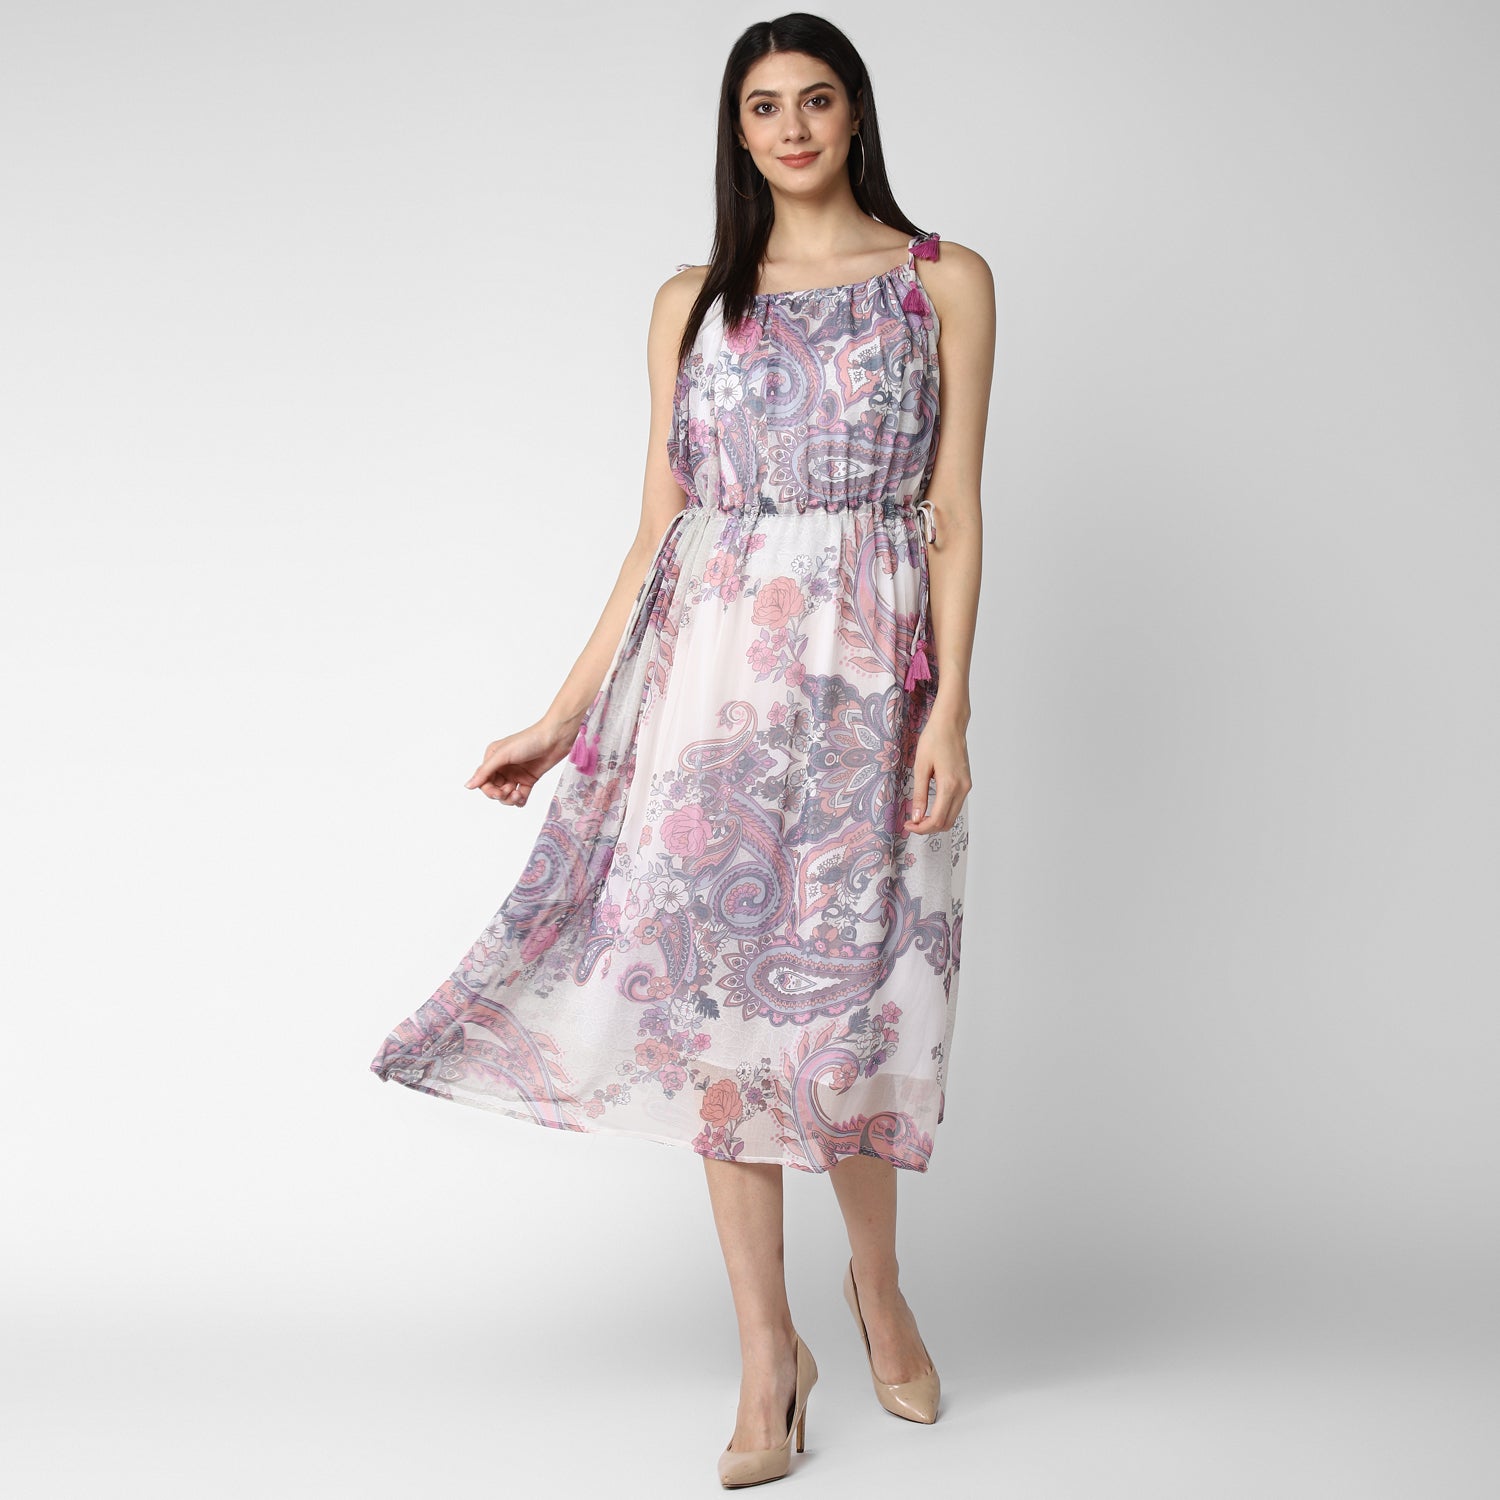 Women's Pink and Lavender Chiffon Tieup Dress - StyleStone